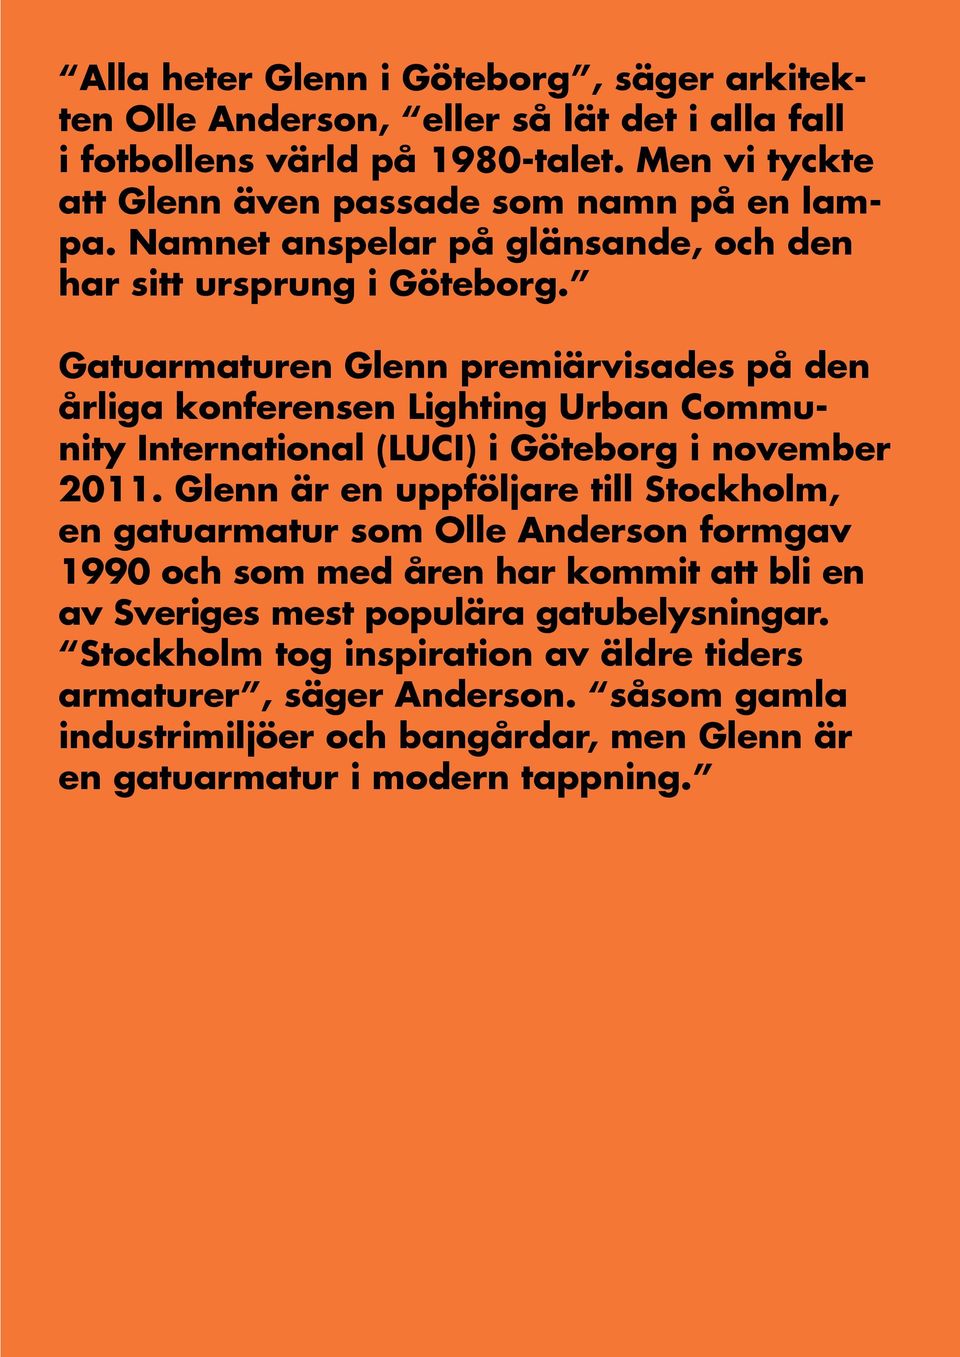 Gatuarmaturen Glenn premiärvisades på den årliga konferensen Lighting Urban Community International (LUCI) i Göteborg i november 2011.